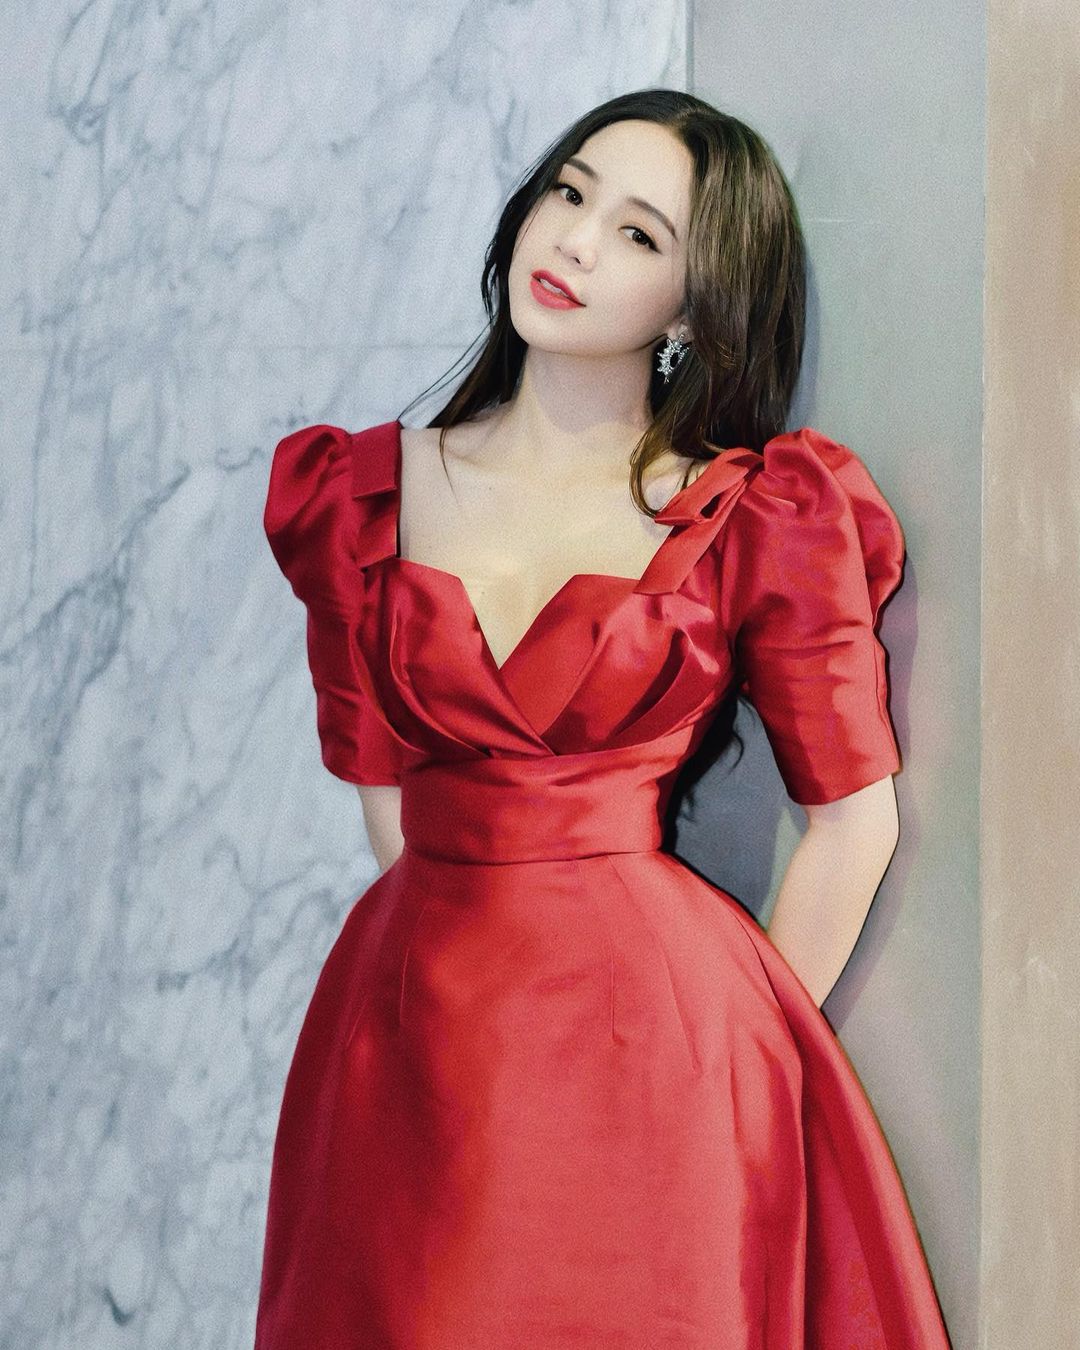 Xuất hiện trong sự kiện gần đây, Quỳnh Kool diện váy đỏ nổi bật, cổ áo xẻ sâu để khoe phần vai mong manh và vòng 1 đầy đặn. Trông nữ diễn viên thanh lịch, dịu dàng và vô cùng nữ tính